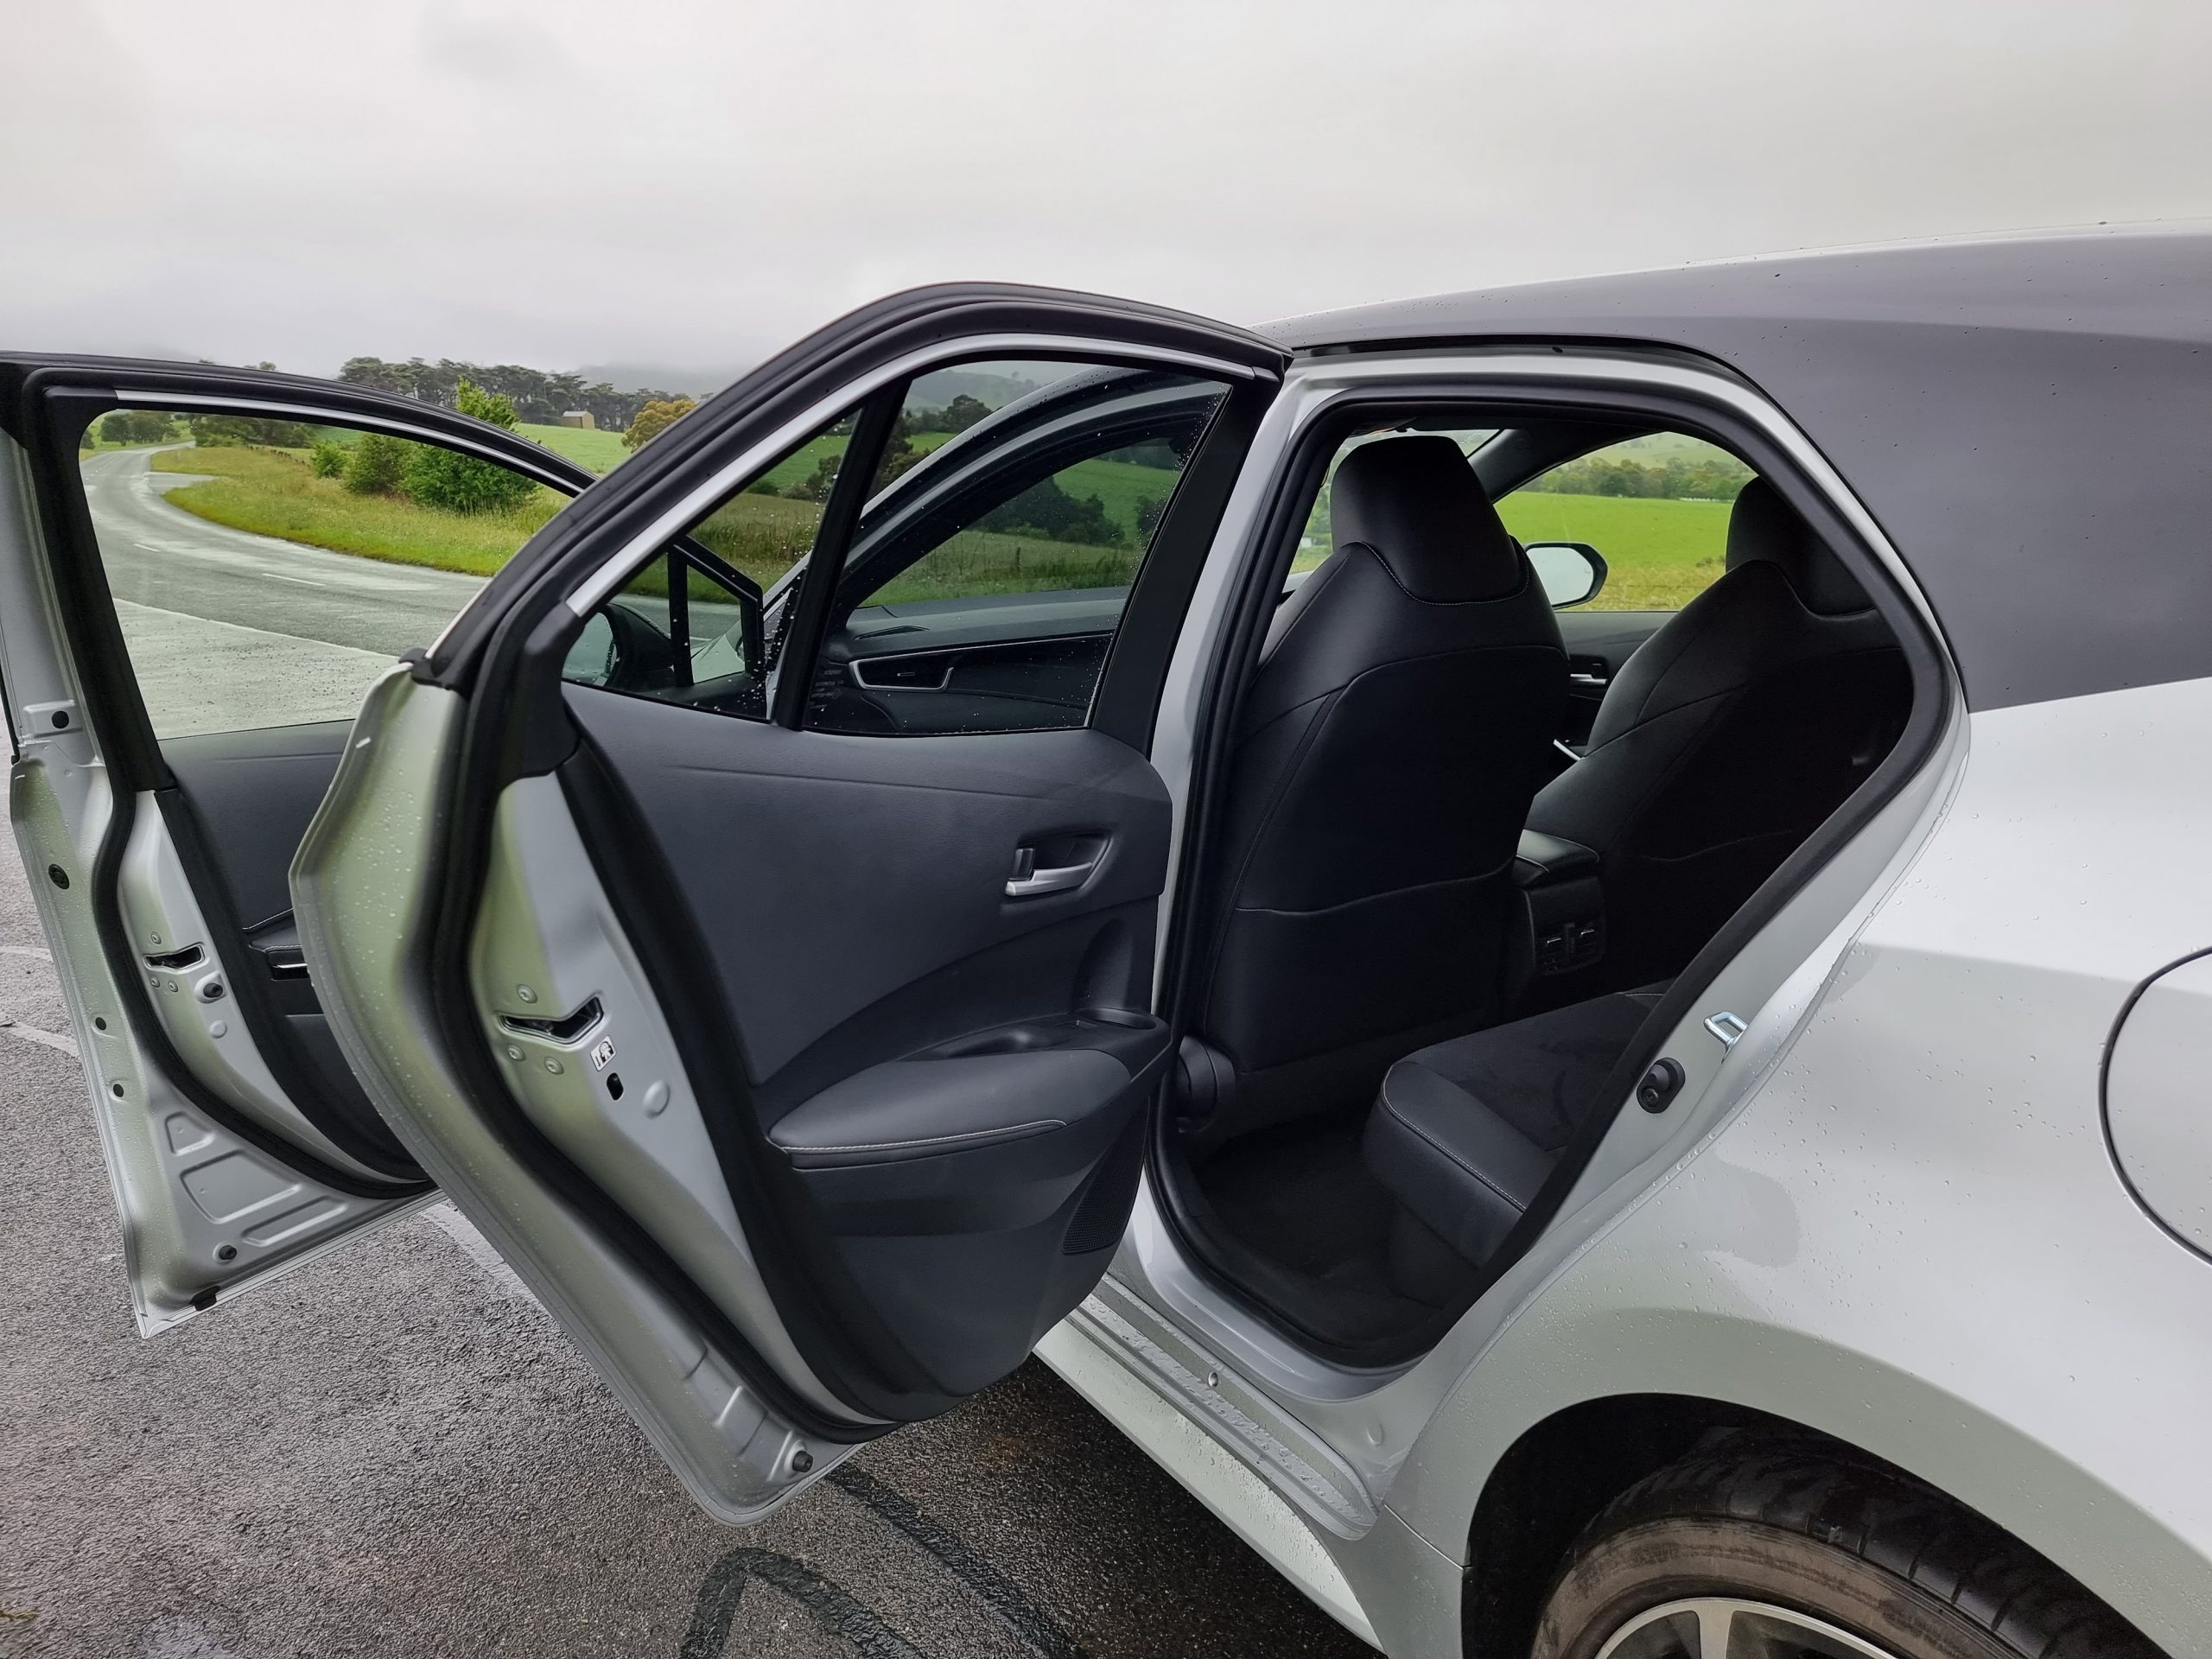 2022 Toyota Corolla rear seat